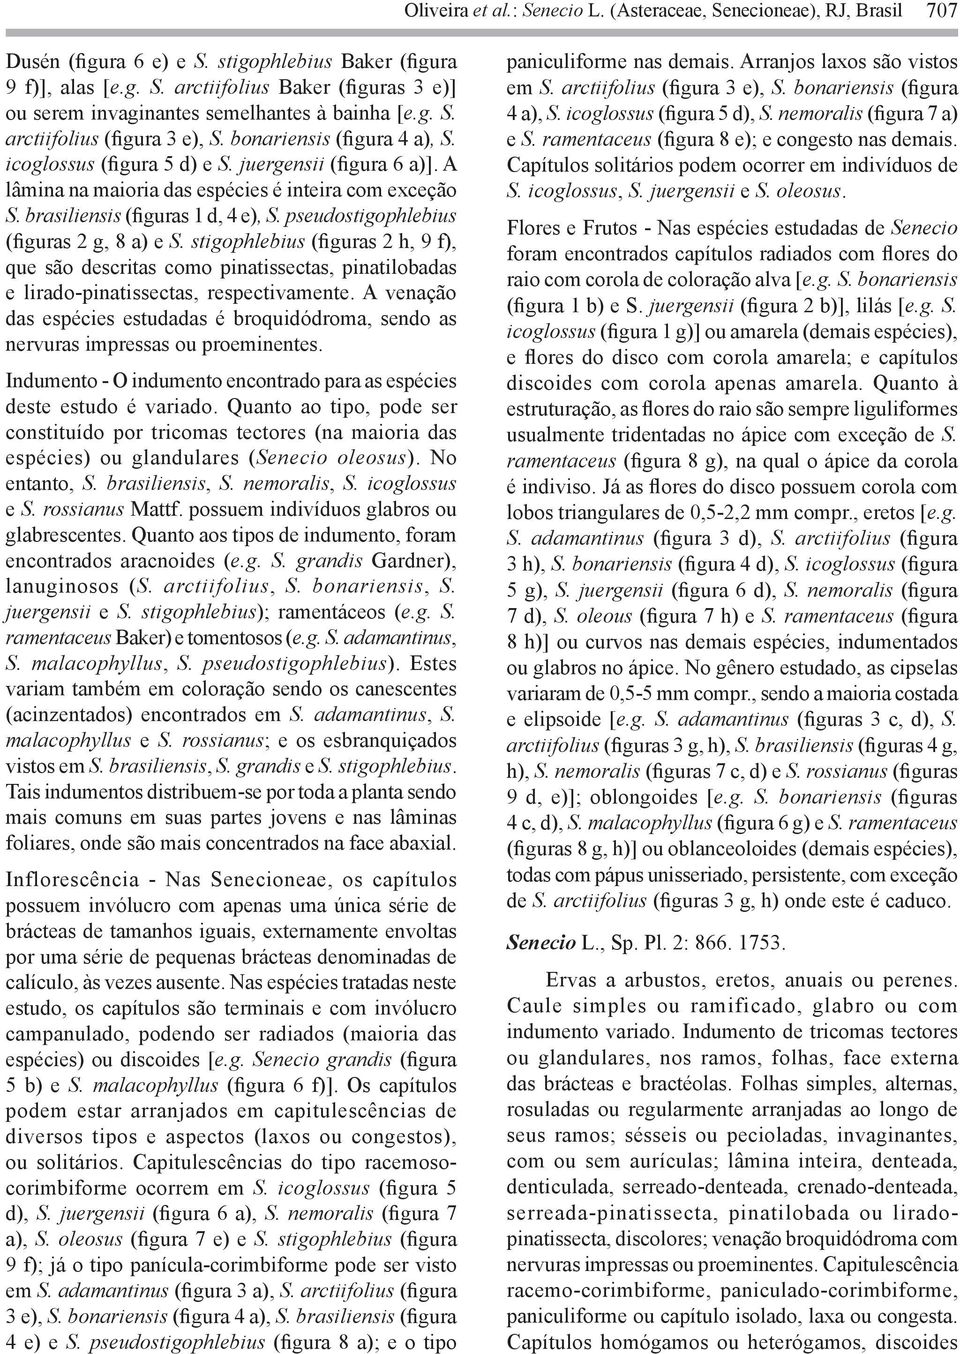 brasiliensis (figuras 1 d, 4 e), S. pseudostigophlebius (figuras 2 g, 8 a) e S.